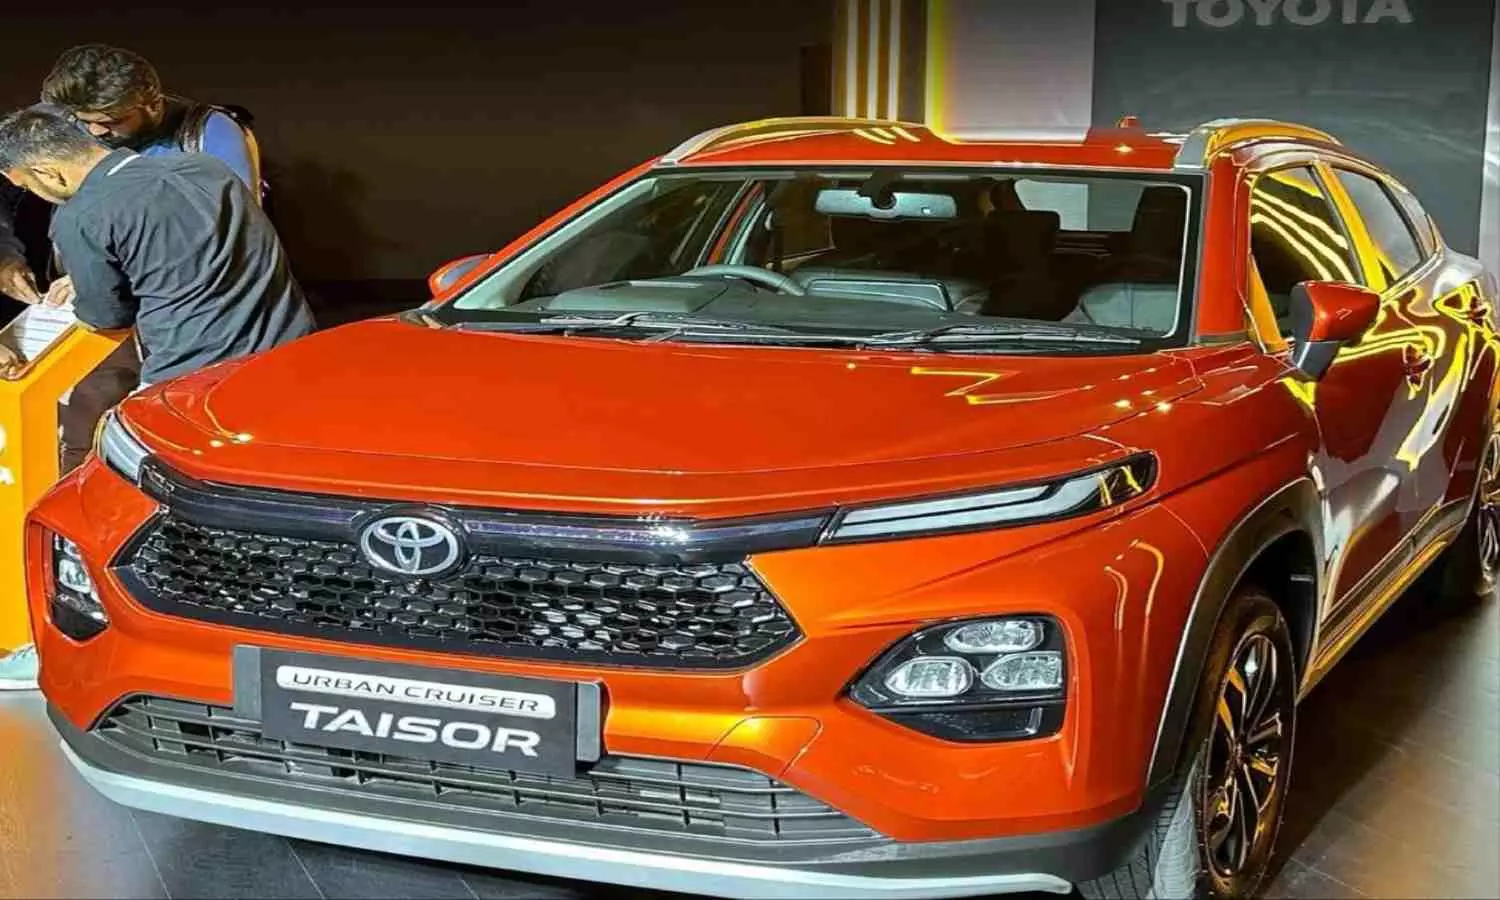 Toyota Urban Cruiser Taisor: टोयोटा की शानदार कार लॉन्च, जानें कितनी है कीमत